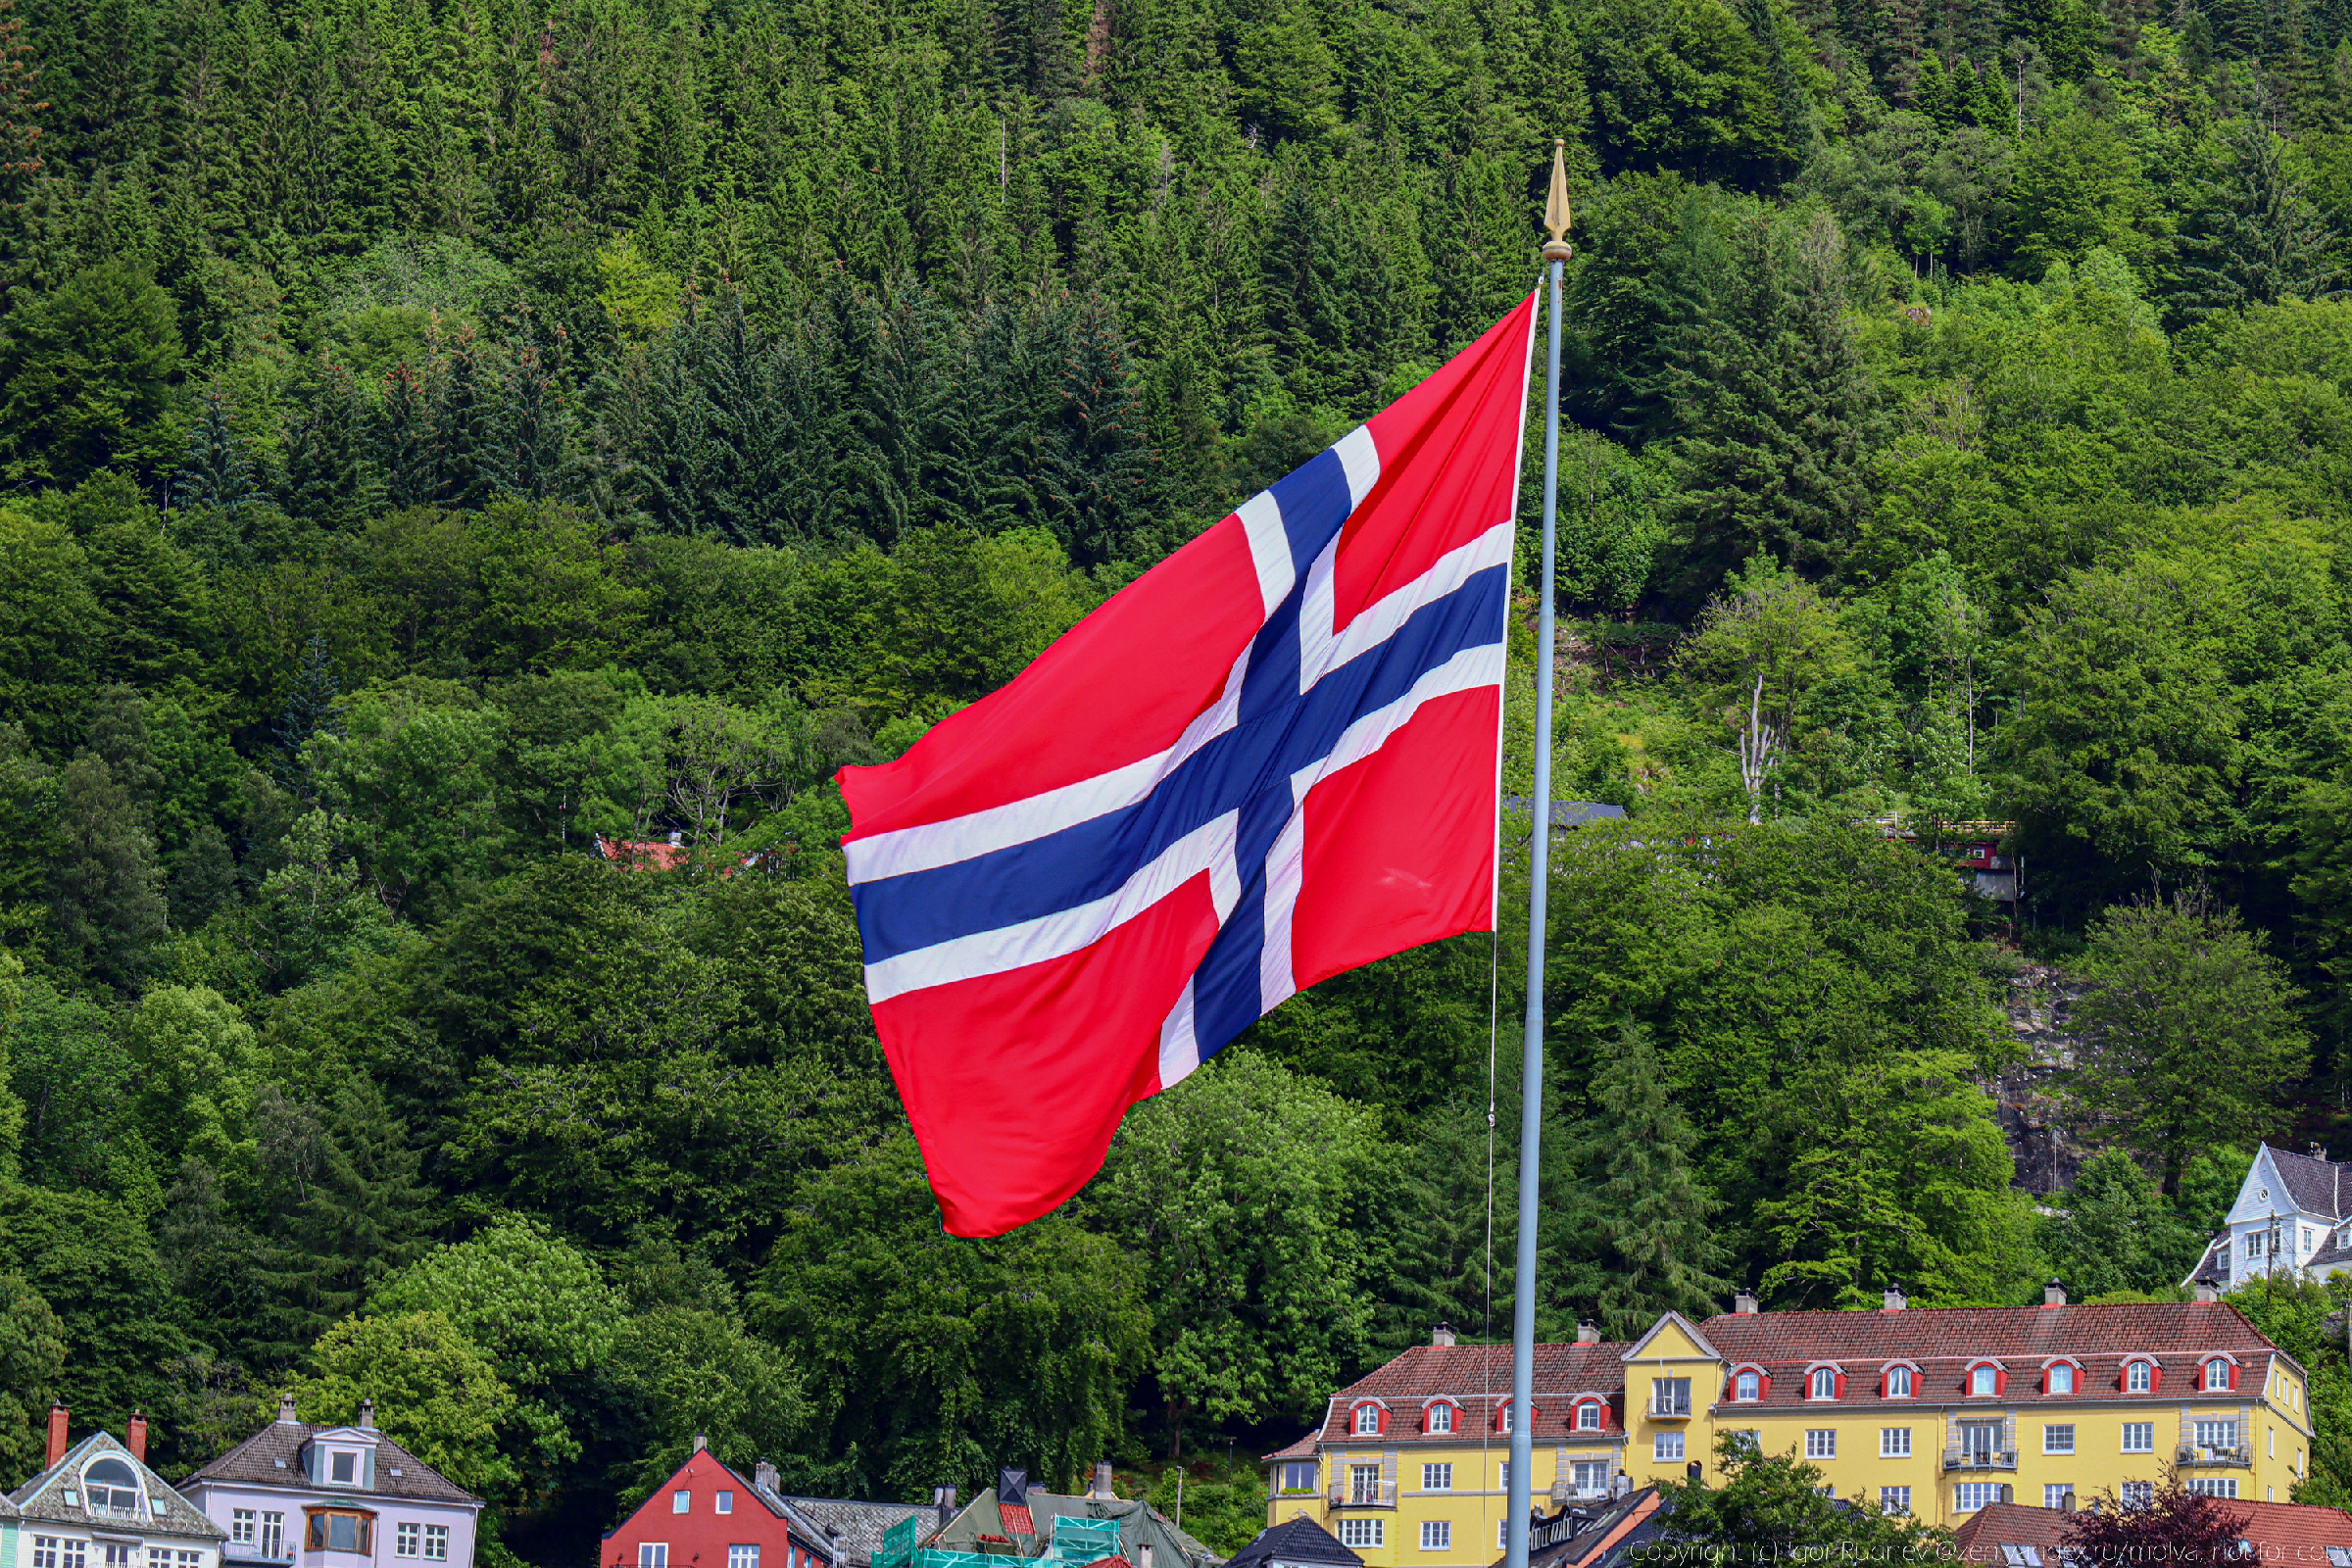 "Я плачу 35% налогов от своих доходов и считаю, что этого мало" — местный поделился мнением о налогах в Норвегии